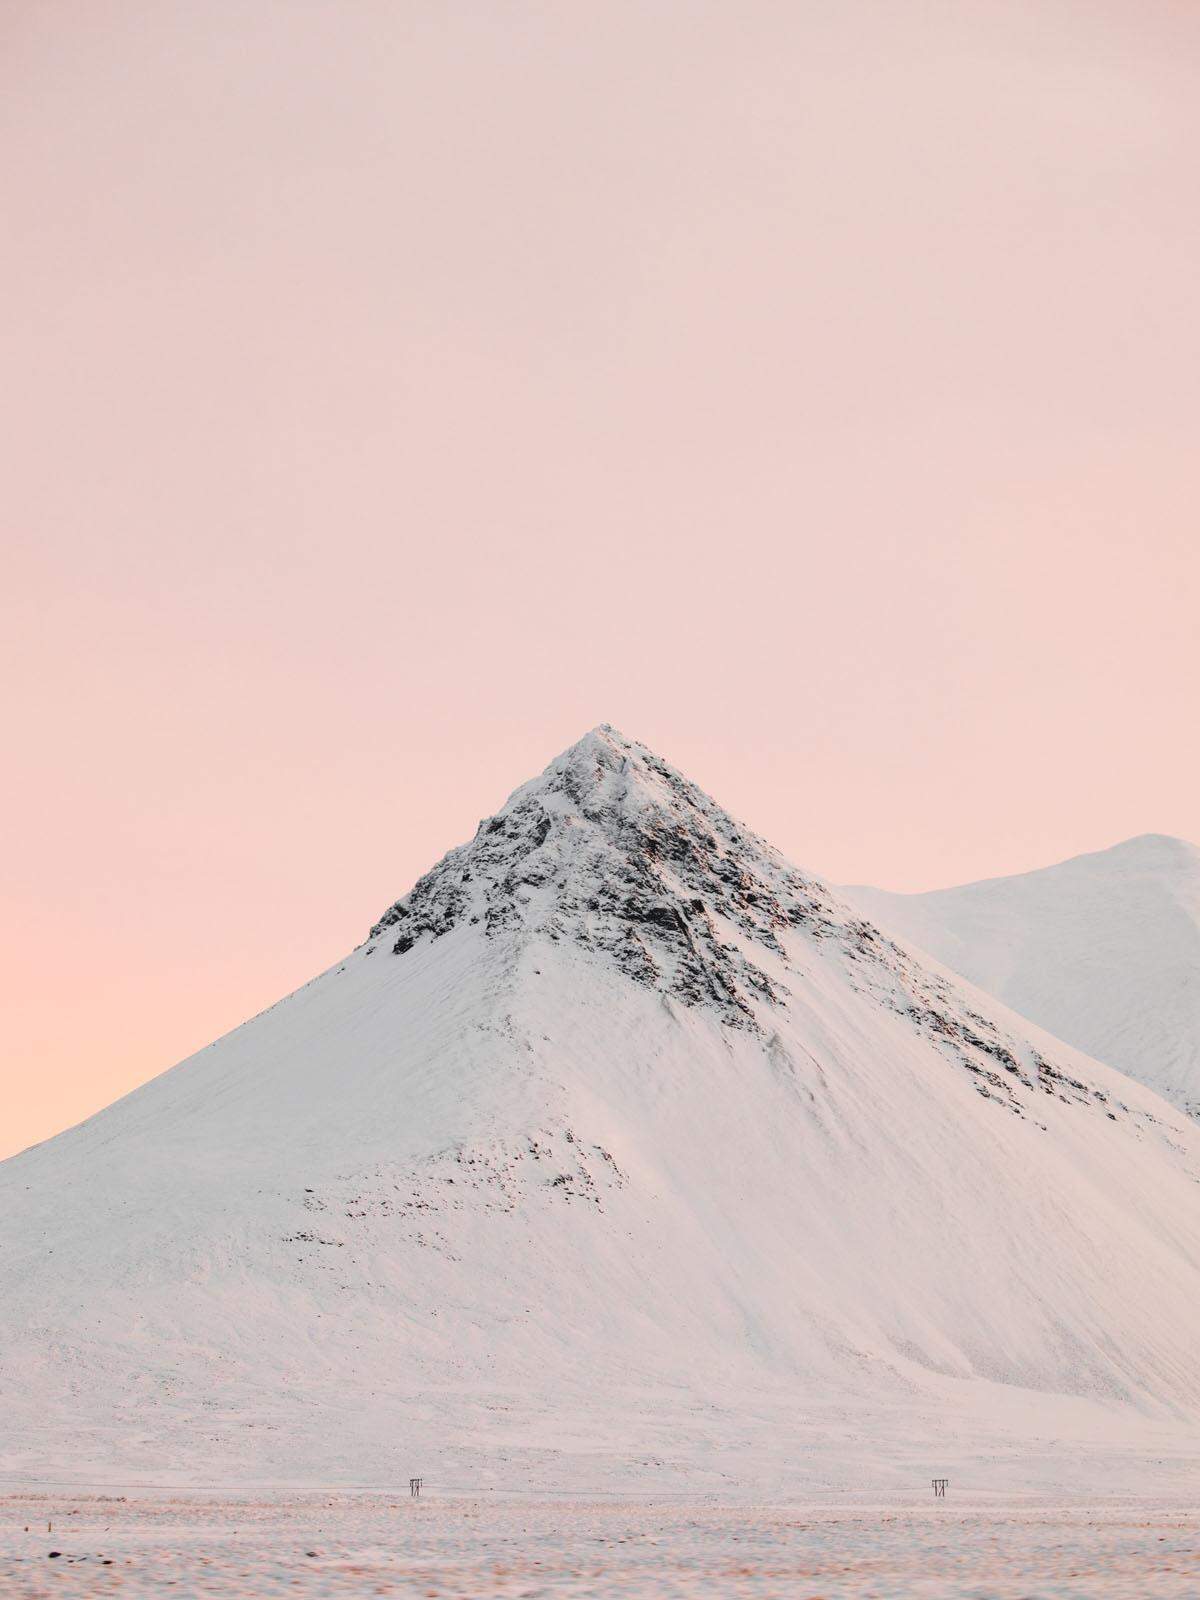 Der Norden Islands könne in den Tiefen des Winters hart sein, schreibt ein Fotograf, aber zwischen Schneestürmen bekäme man auch unglaubliche Sonnenunter- und Sonnenaufgänge zu sehen.